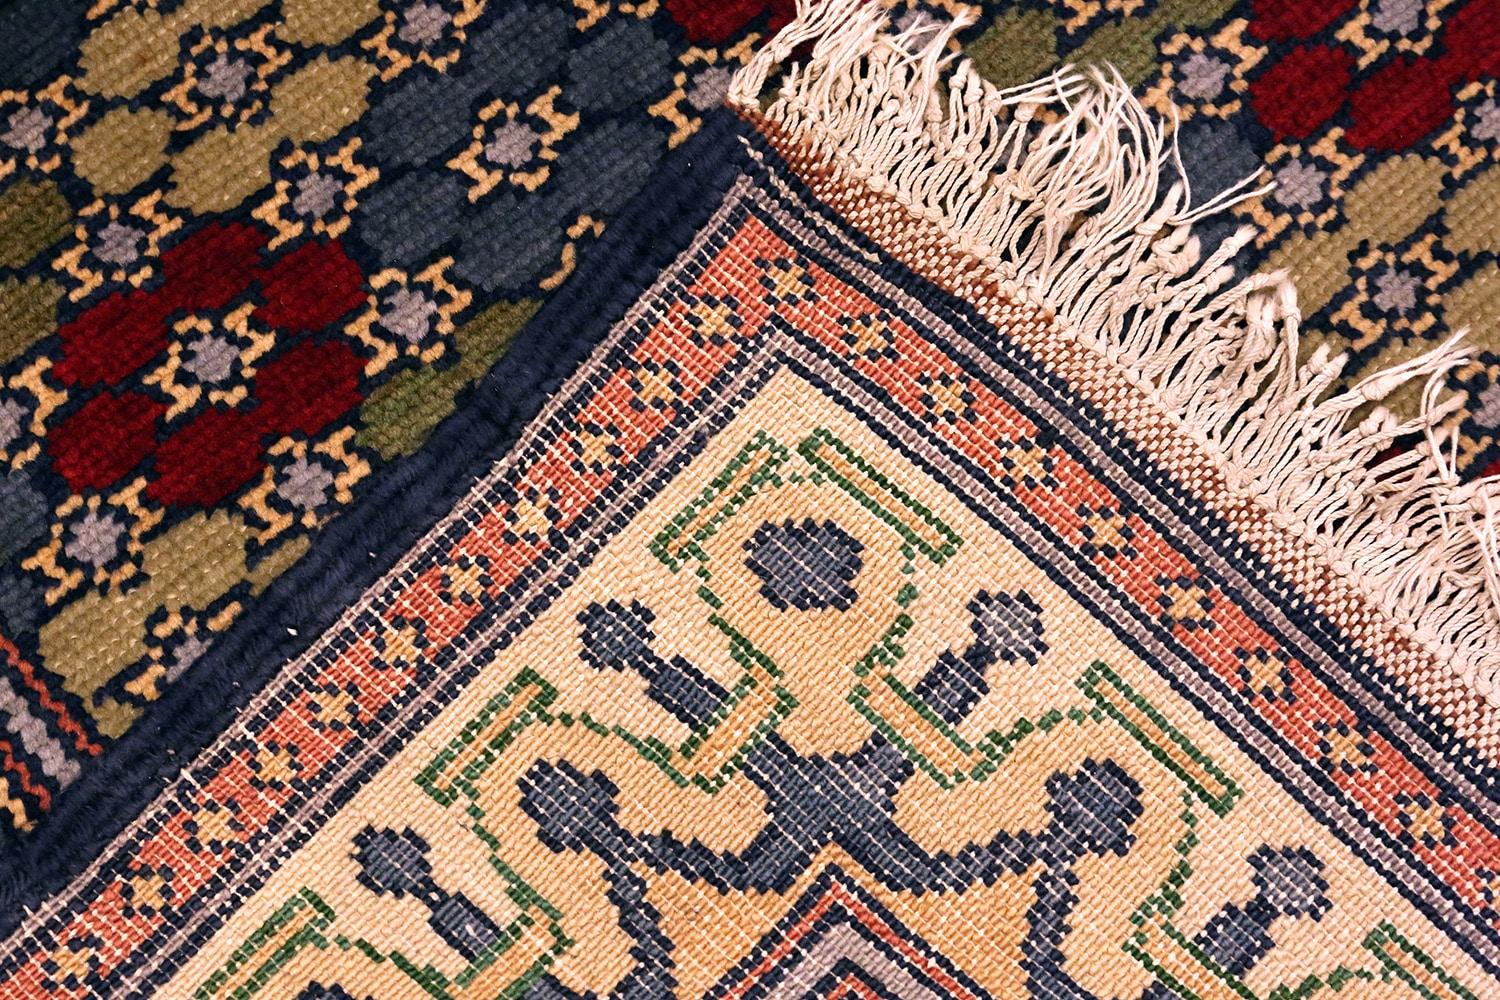 Ein prächtiger, artistischer Vintage Israeli Bezalel Teppich, Herkunftsland / Teppichart: Israelische Teppiche, CIRCA Datum: Mitte 20. Jahrhundert. Größe: 0,91 m x 1,42 m (3 ft x 4 ft 8 in)

